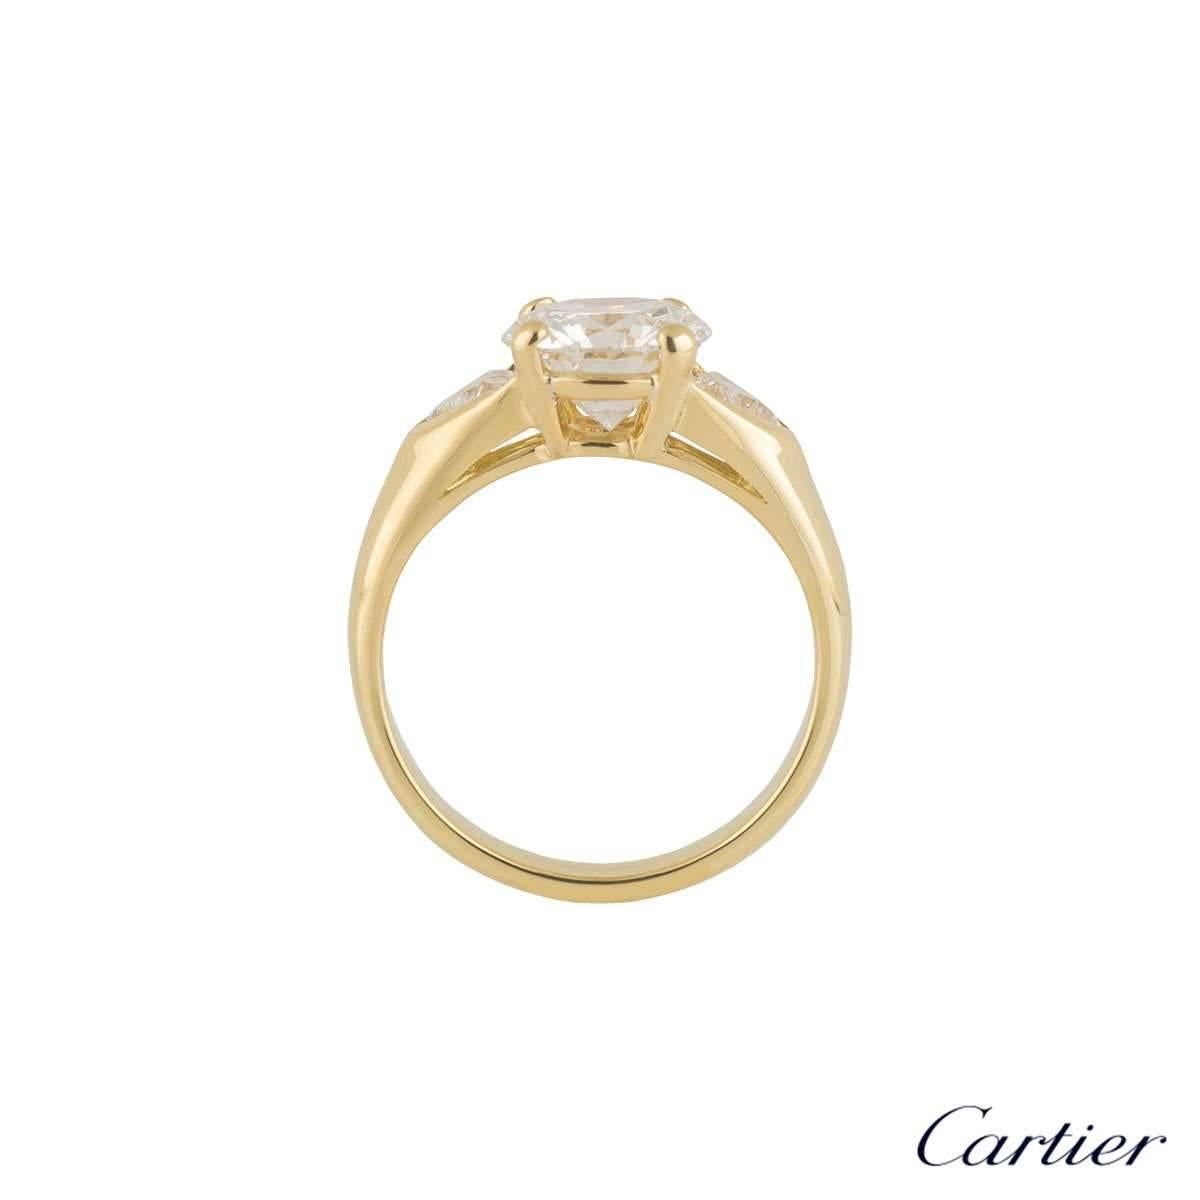 cartier 2 carat diamond ring price